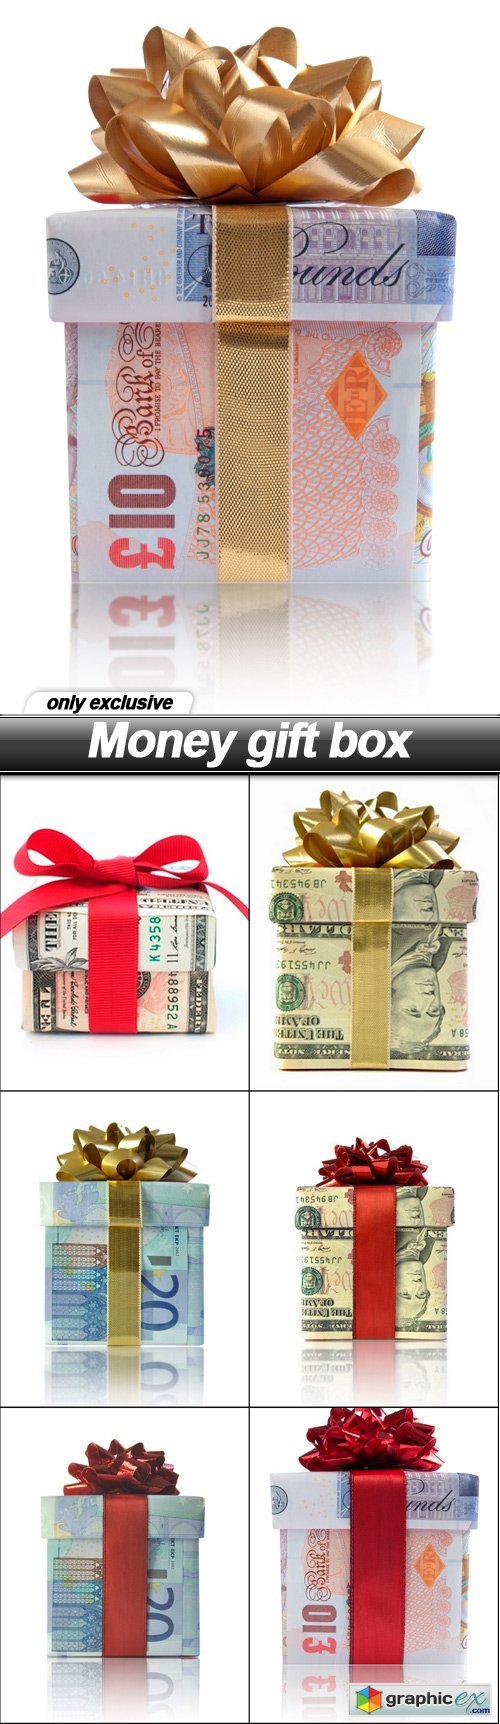 Money gift box - 7 UHQ JPEG